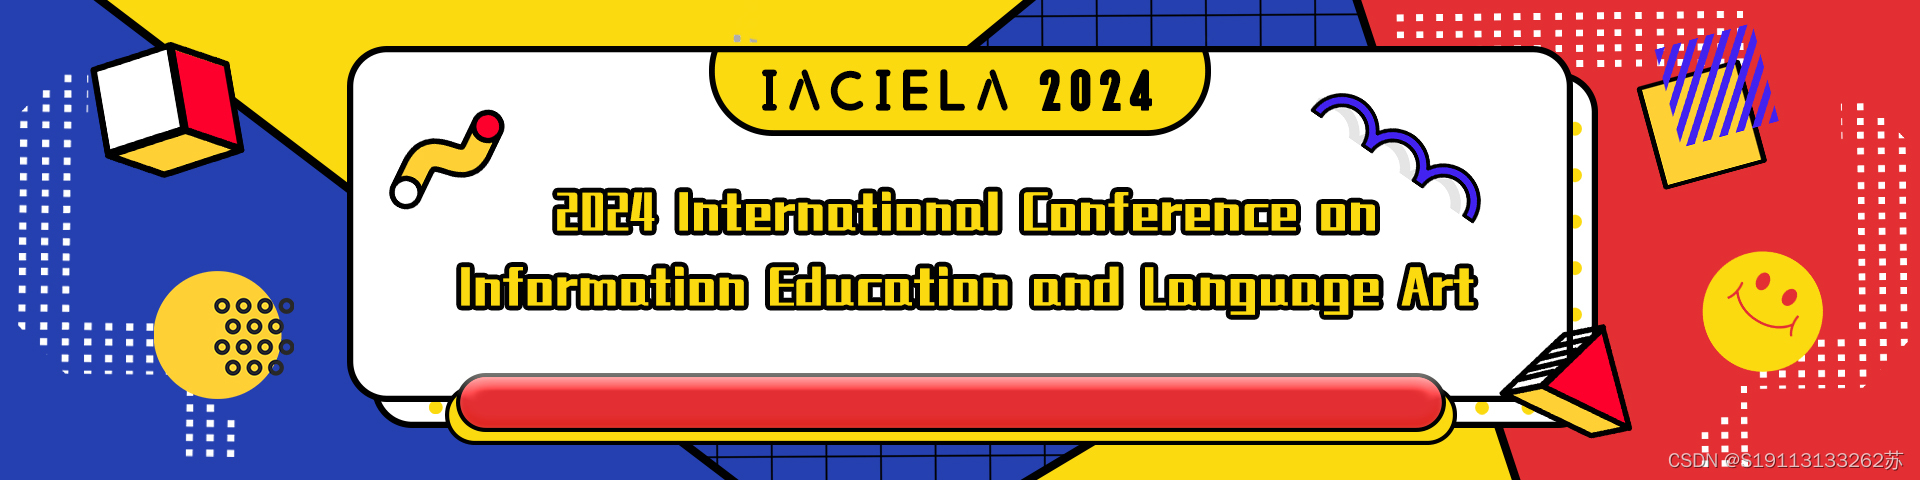 2024年信息教育化与语言艺术国际学术会议(IACIELA 2024)